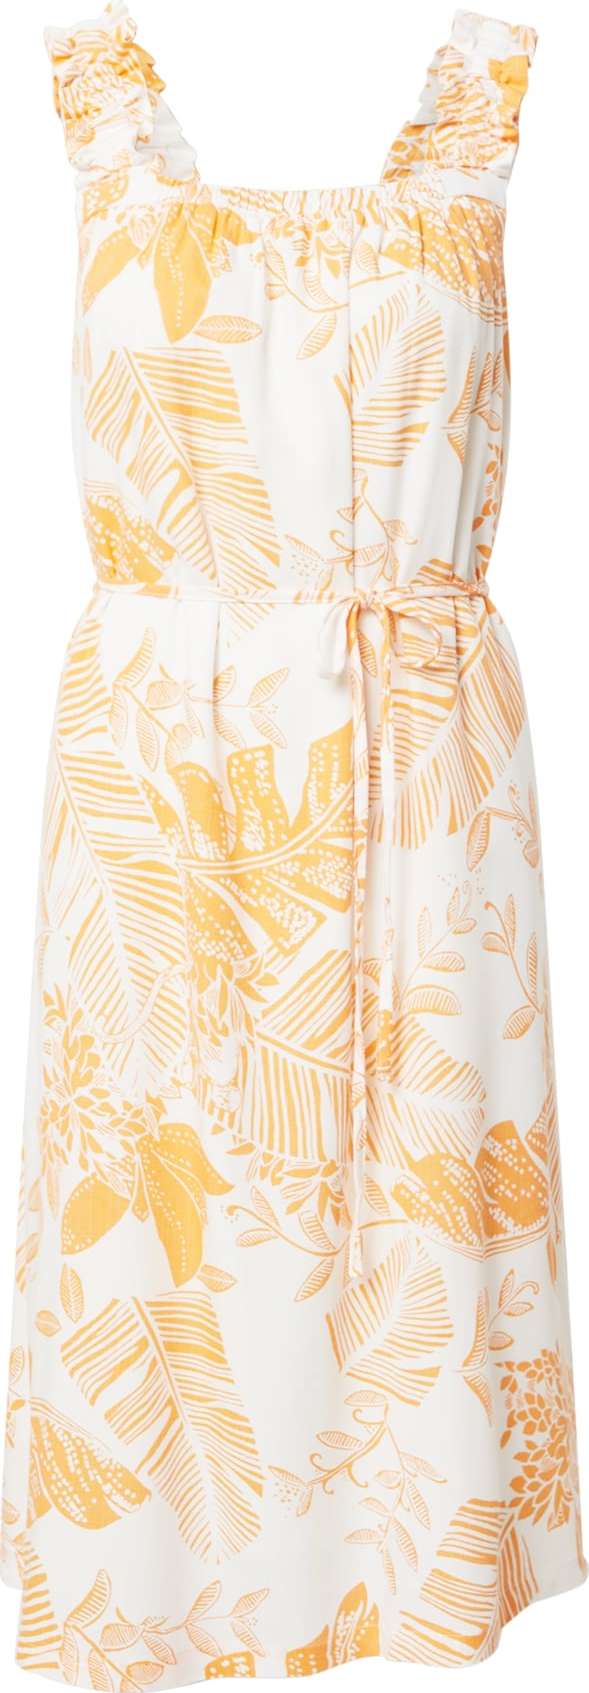 SISTERS POINT Letní šaty 'ERUNA' oranžová / bílá